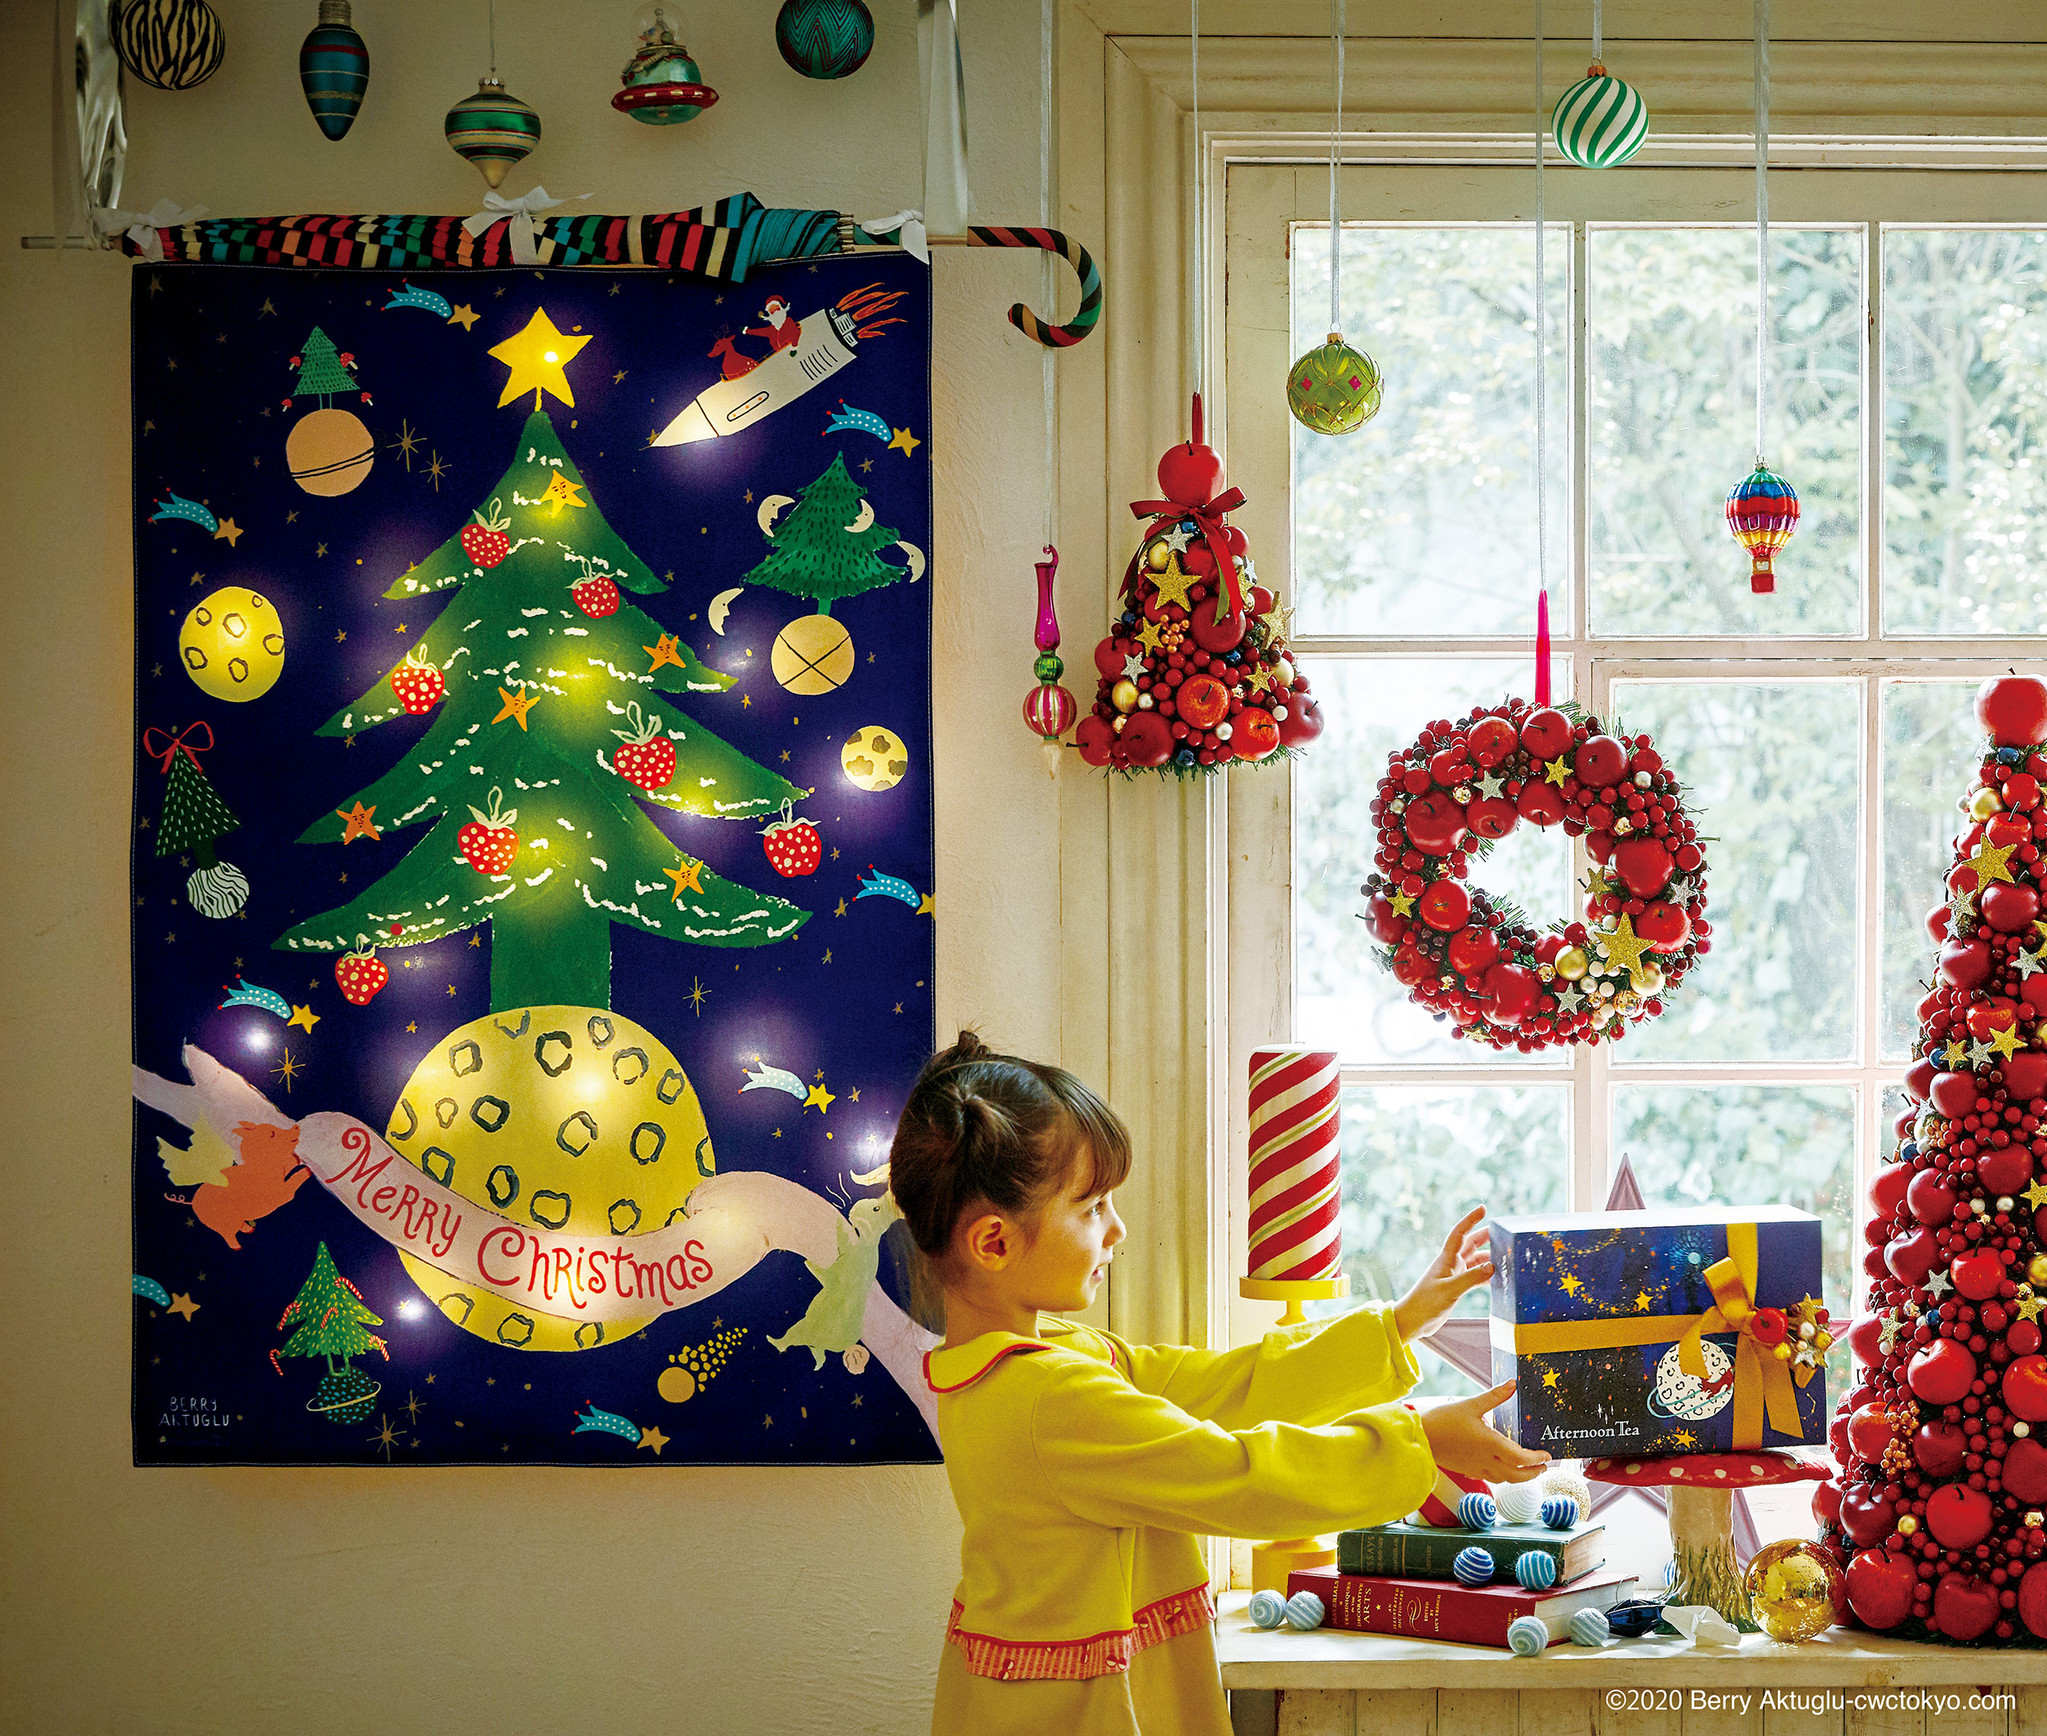 遊んで楽しめるタペストリー新登場 Christmas Wonderland をテーマにしたクリスマスデコレーションを11 4 水 から提案スタート 株式会社サザビーリーグ アイシーエルカンパニーのプレスリリース